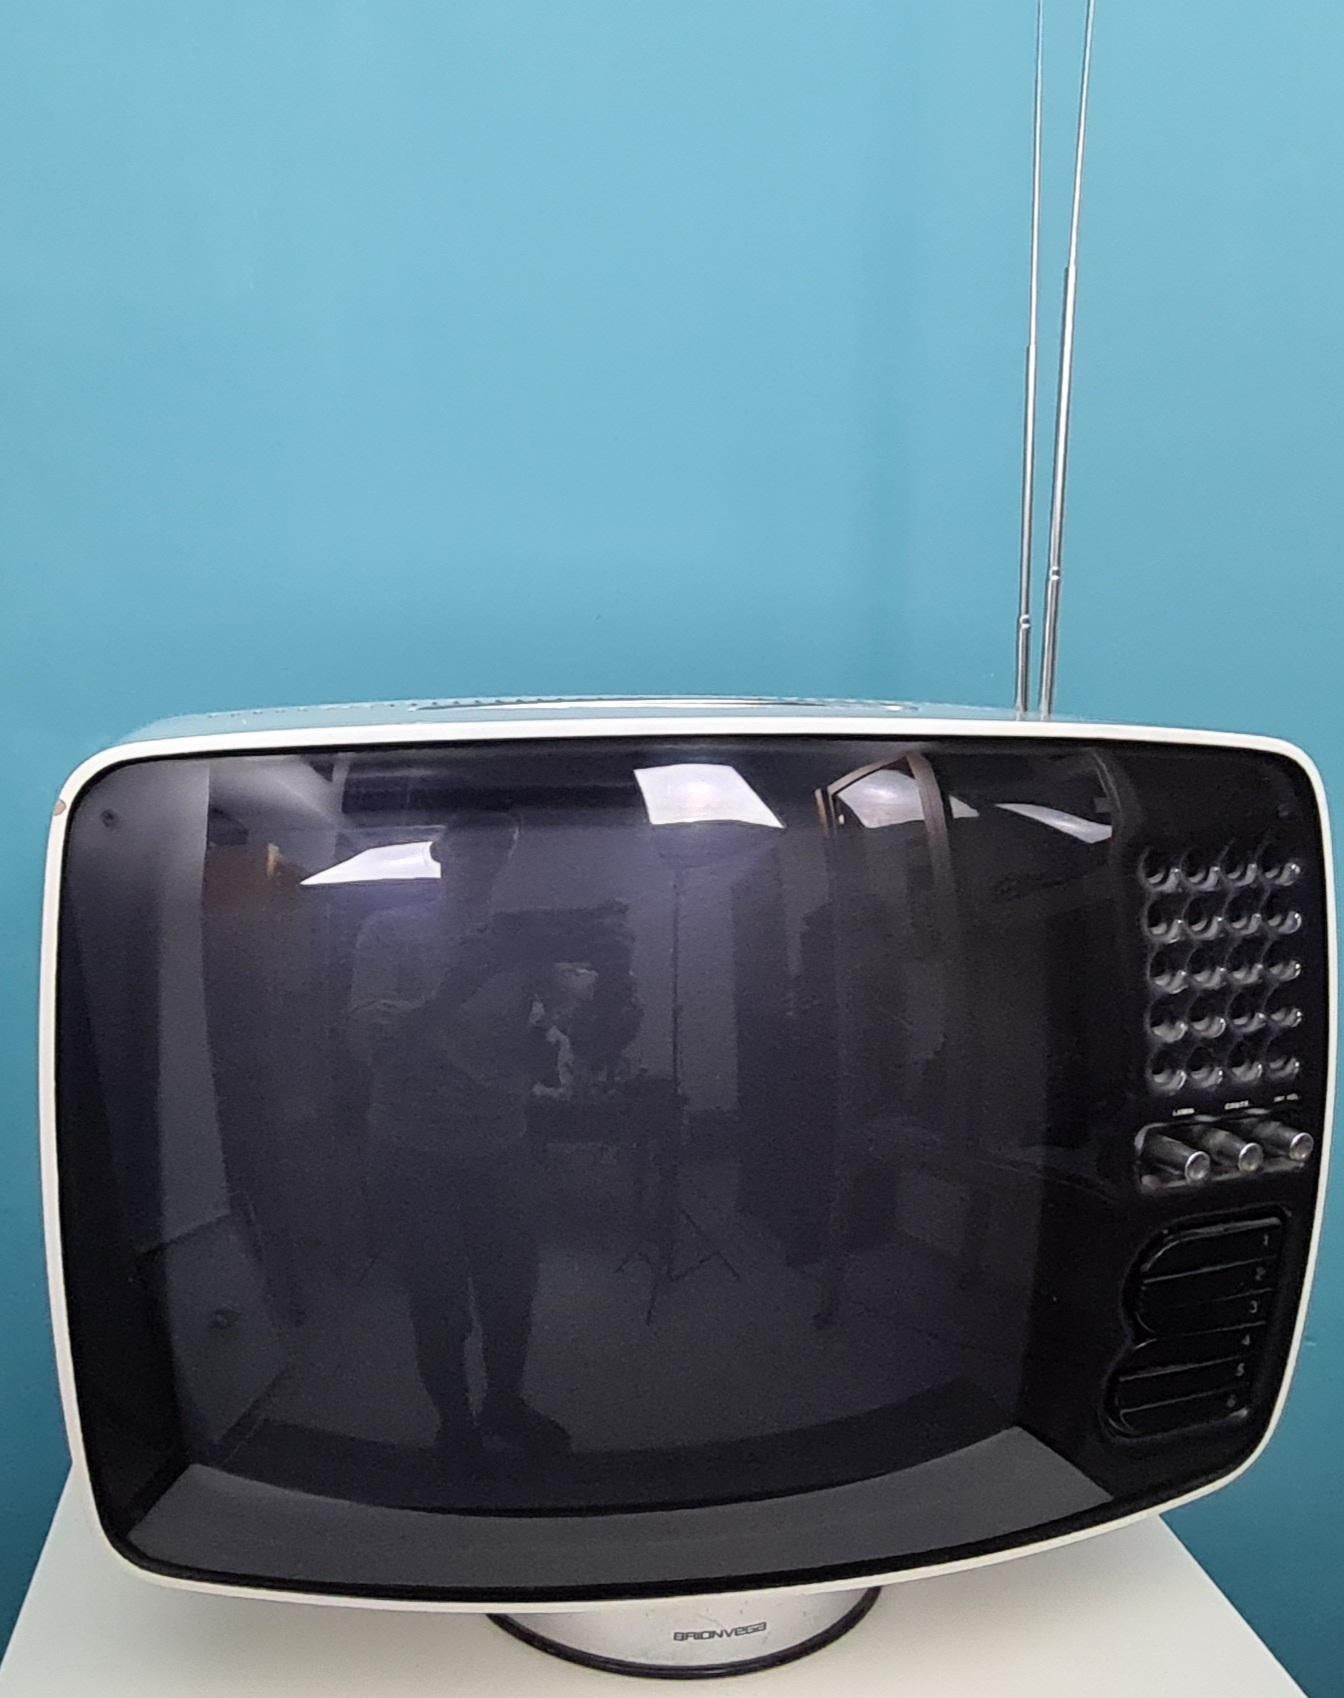 Televisore Volans 17 ” disegnato da Mario Bellini per Brionvega.

Progettato nel 1969.

L’Apparecchio è  in materiale plastico ABS di colore bianco con profili arrotondati e smussati poggiante su uno zoccolo cilindrico cromato.

Il cinescopio da 17